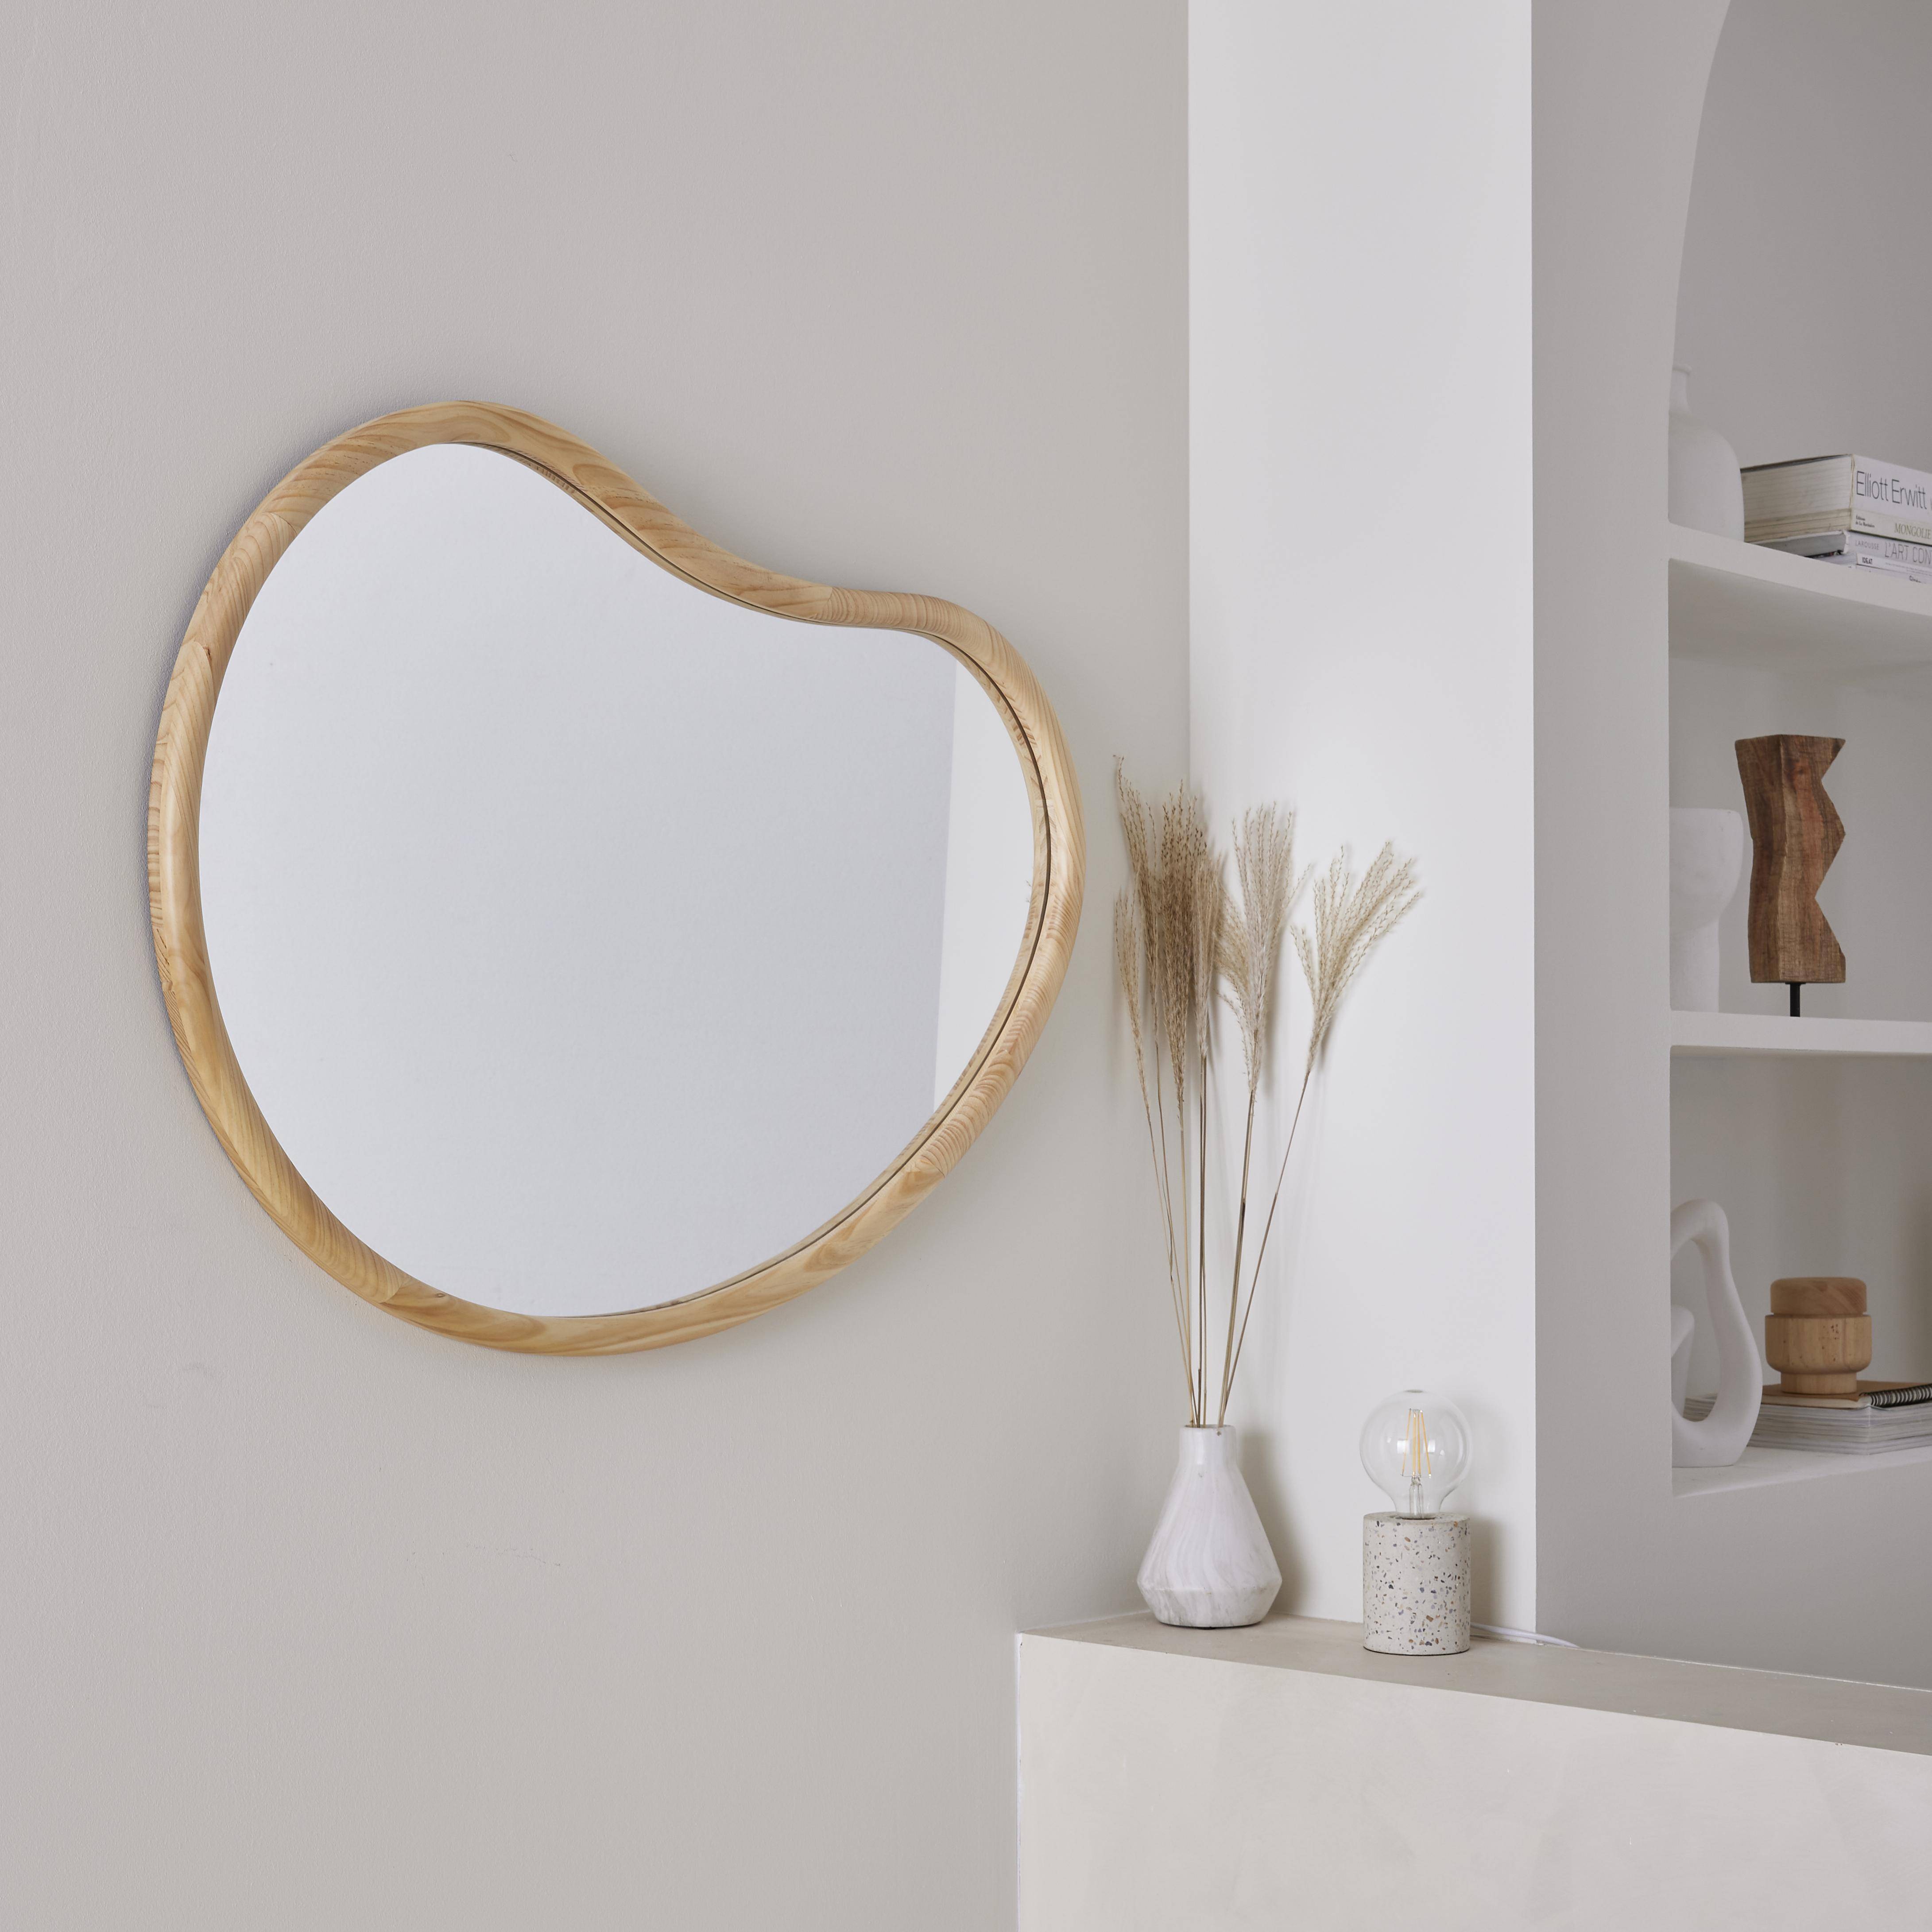 Miroir organique en bois de sapin 95cm épaisseur 3cm coloris naturel idéal entrée, chambre ou salle de bain,sweeek,Photo2